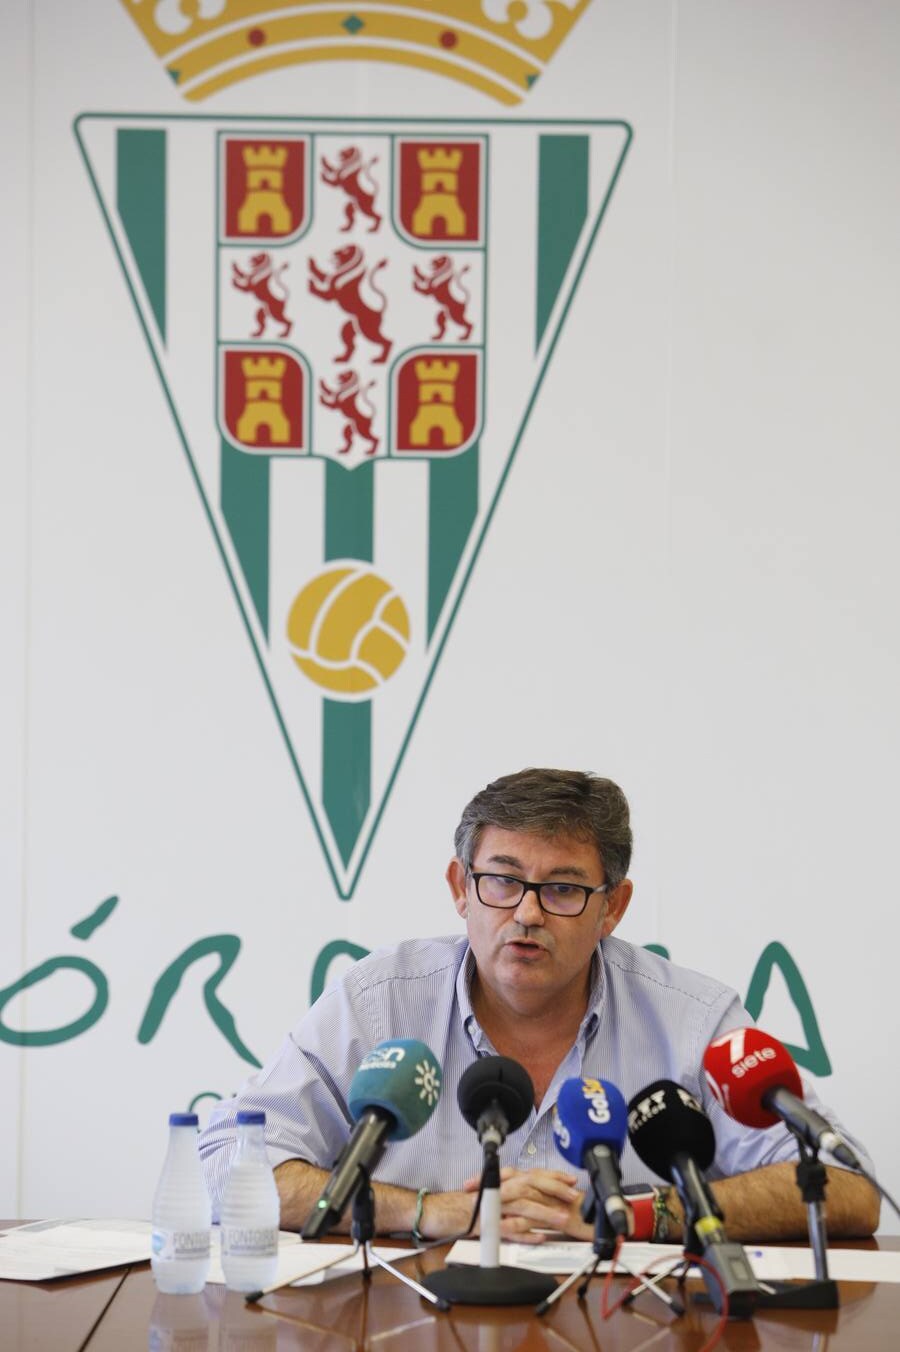 La presentación de la campaña de abonos del Córdoba CF, en imágenes